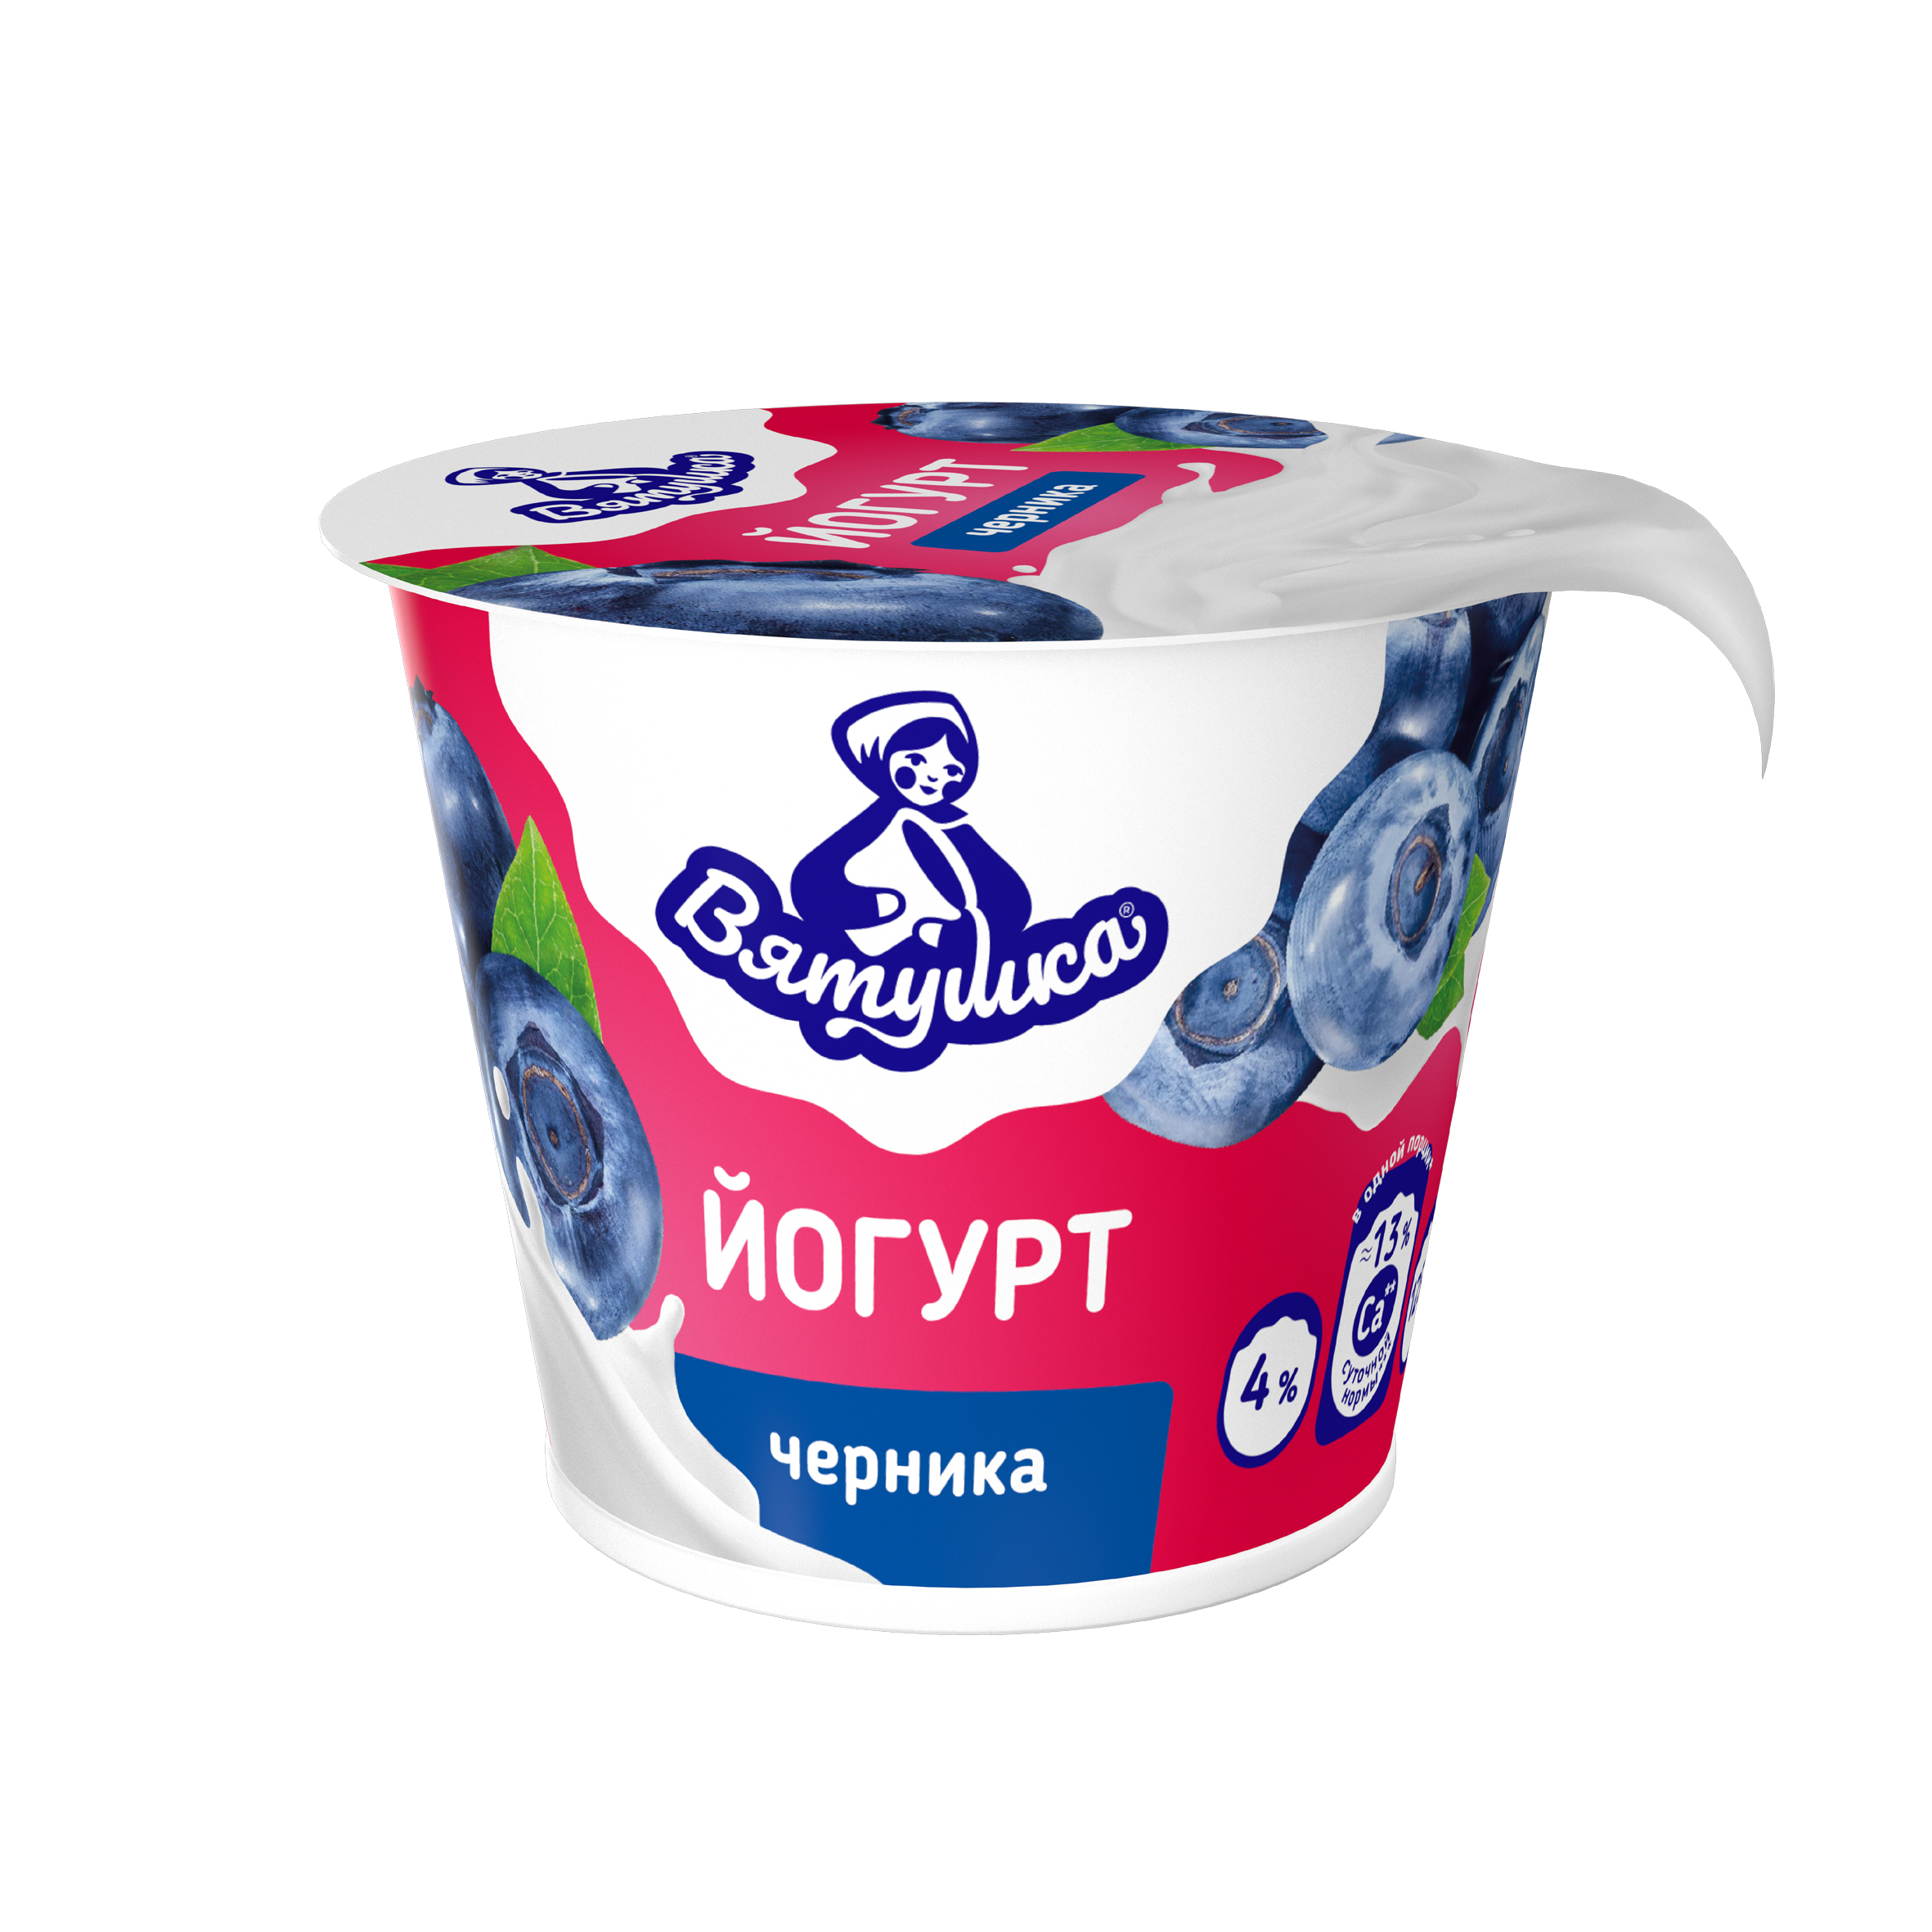 Йогурт Вятушка